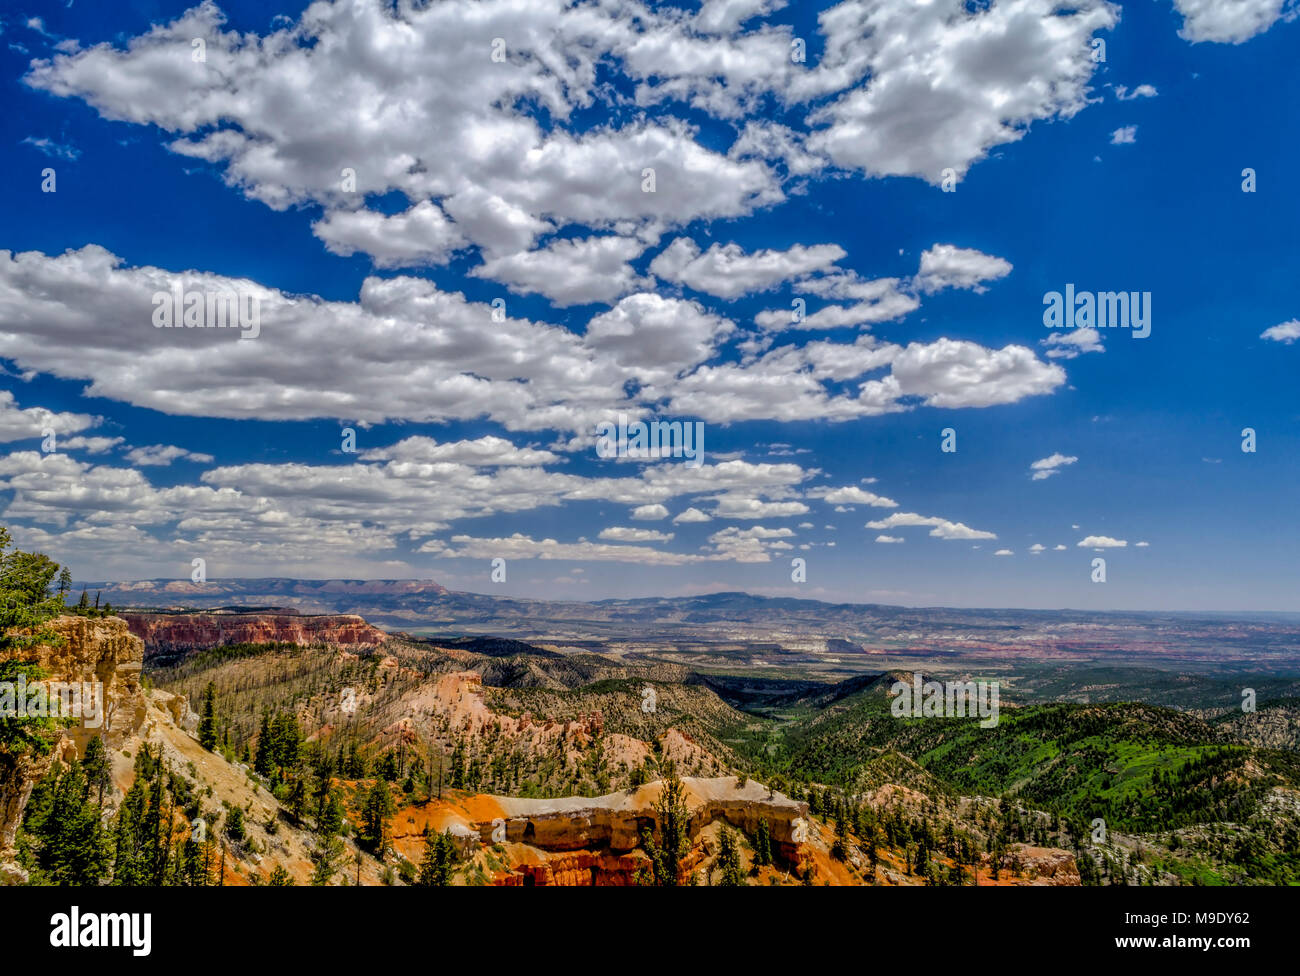 Donnant sur une vallée avec orange et rouge coteaux et falaises avec green valley ci-dessous sous un ciel bleu avec des nuages blancs moelleux. Banque D'Images